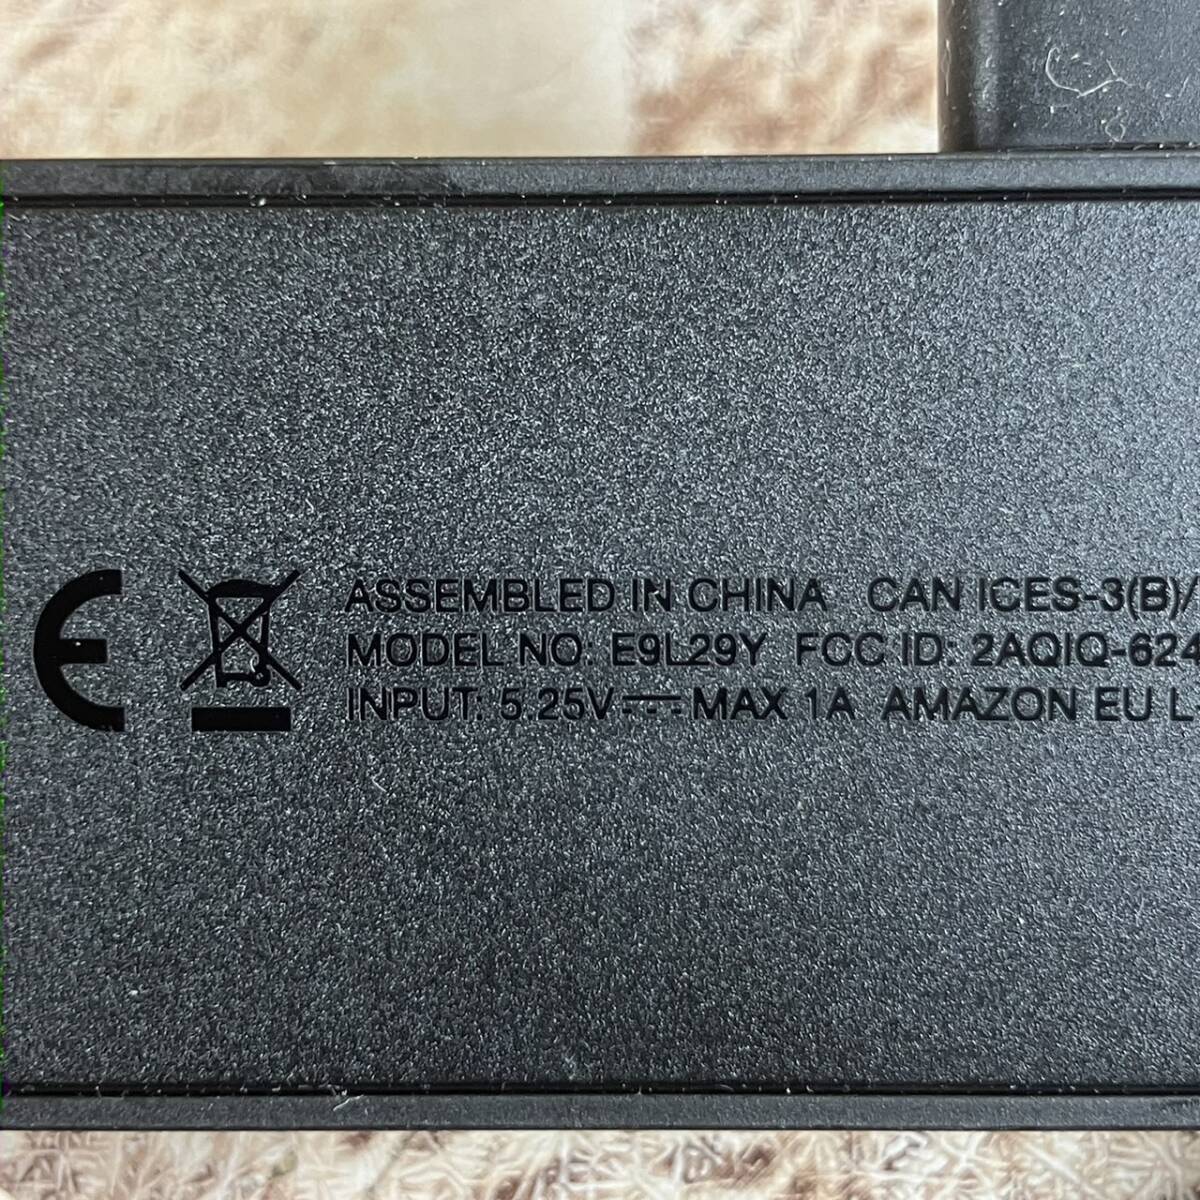 [4-375] Amazon fire TV stick ファイヤースティック 4k 第一世代 E9L29Y 【送料一律297円】の画像4